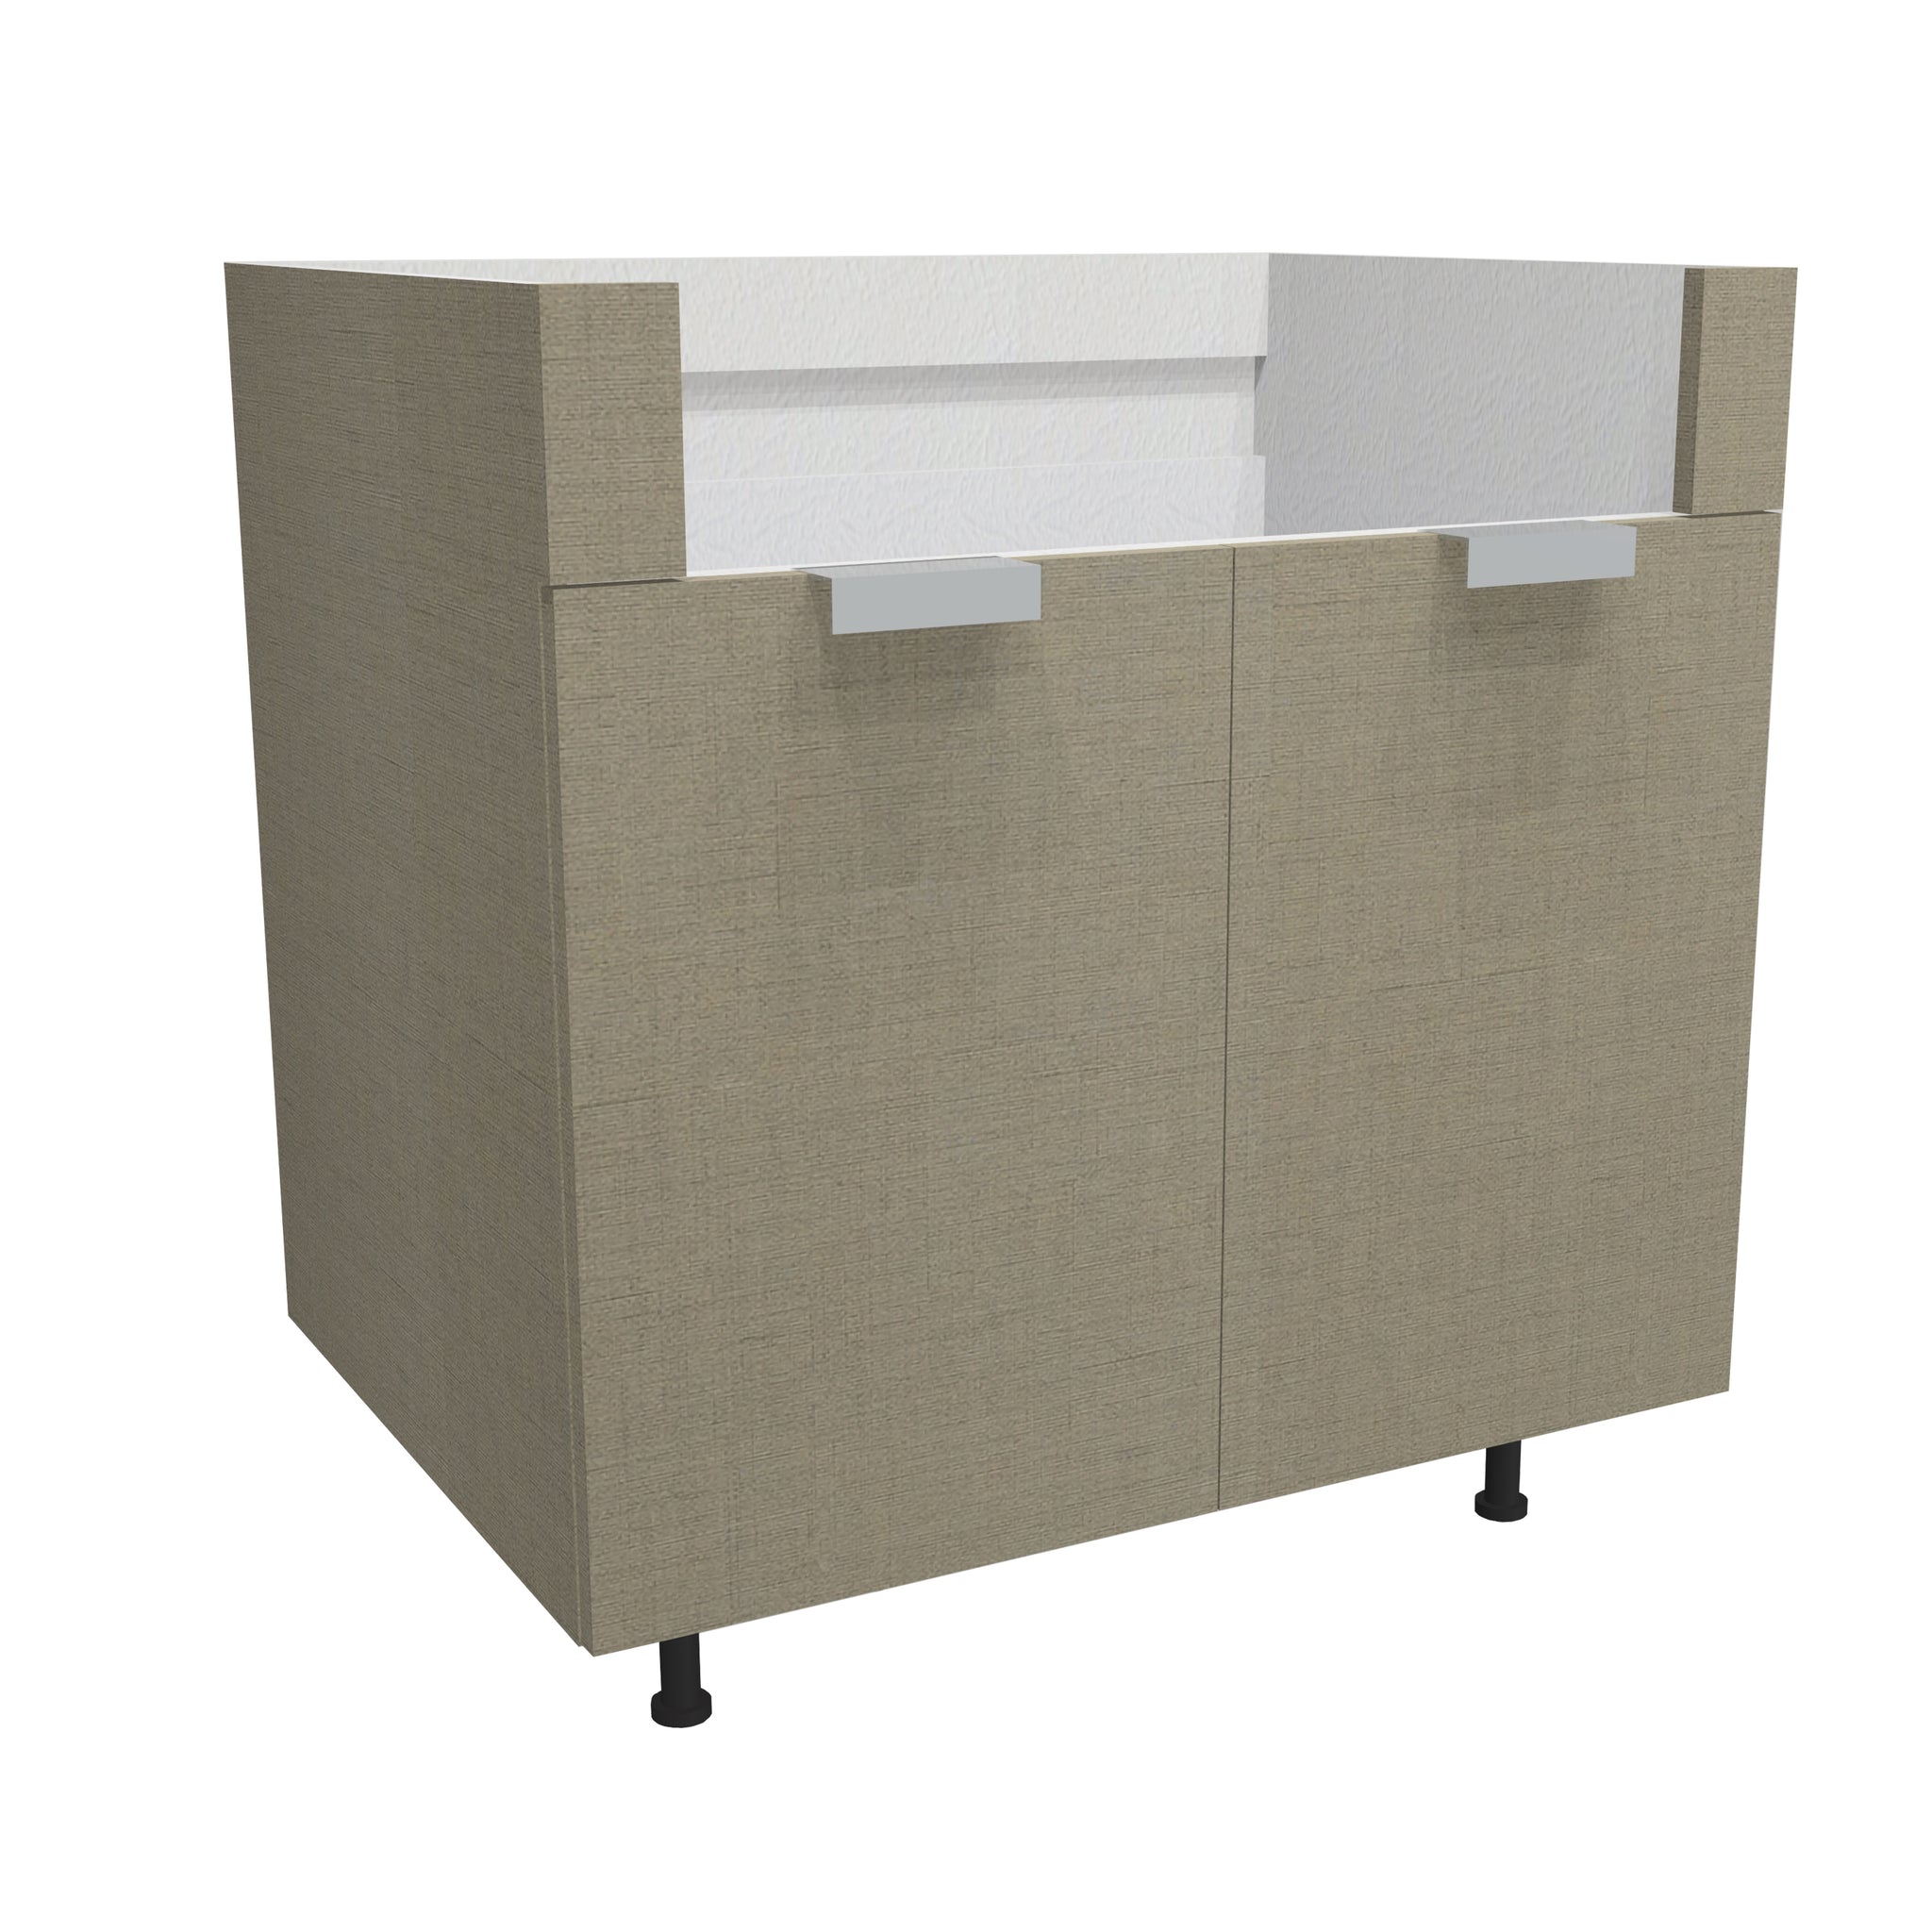 RTA - Fabric Grey - Farm Sink Base Cabinet | 36"W x 34.5"H x 24"D